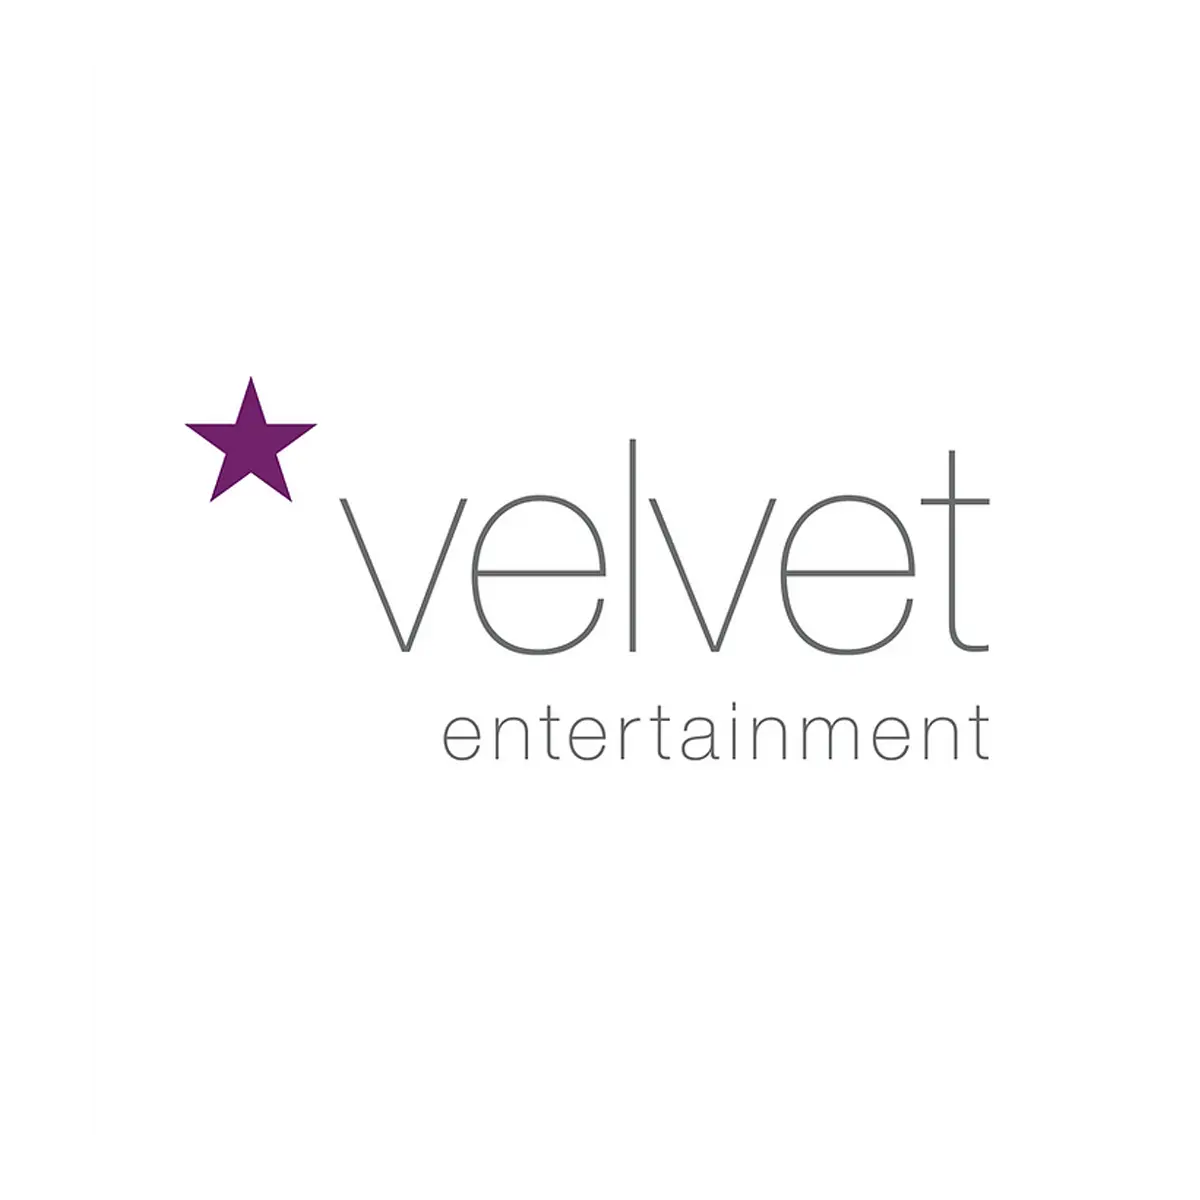 Velvent Entertainment - Logo